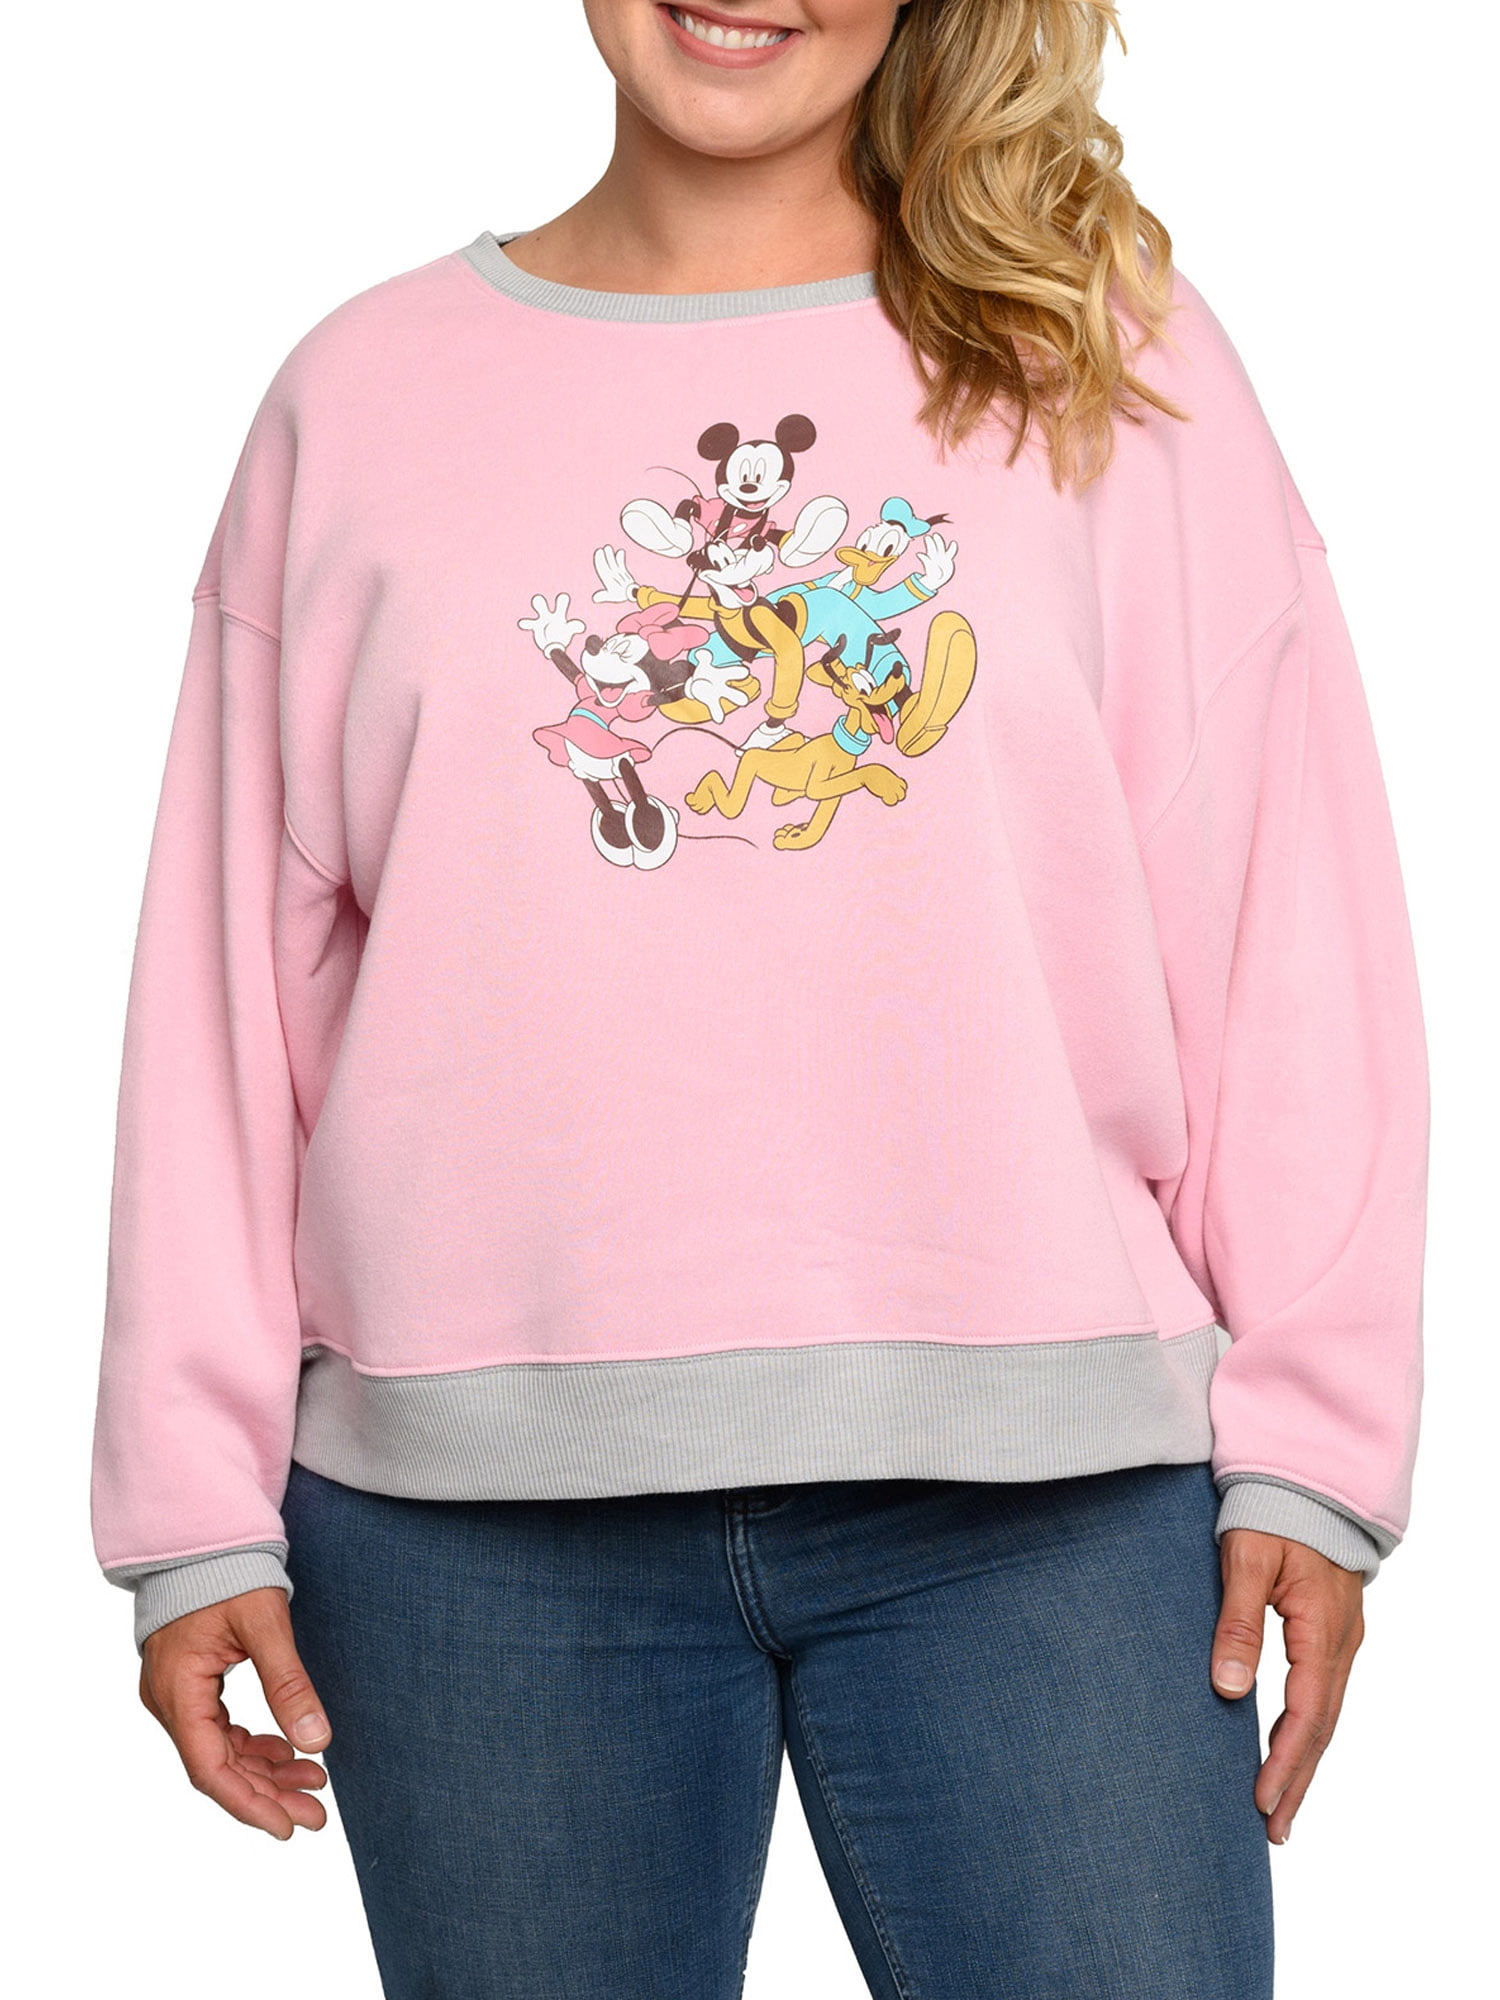 Disney Womens Plus Size Mickey Mouse Friends Fleece Long Sleeve Sweatshirt  Pink - Walmart.com